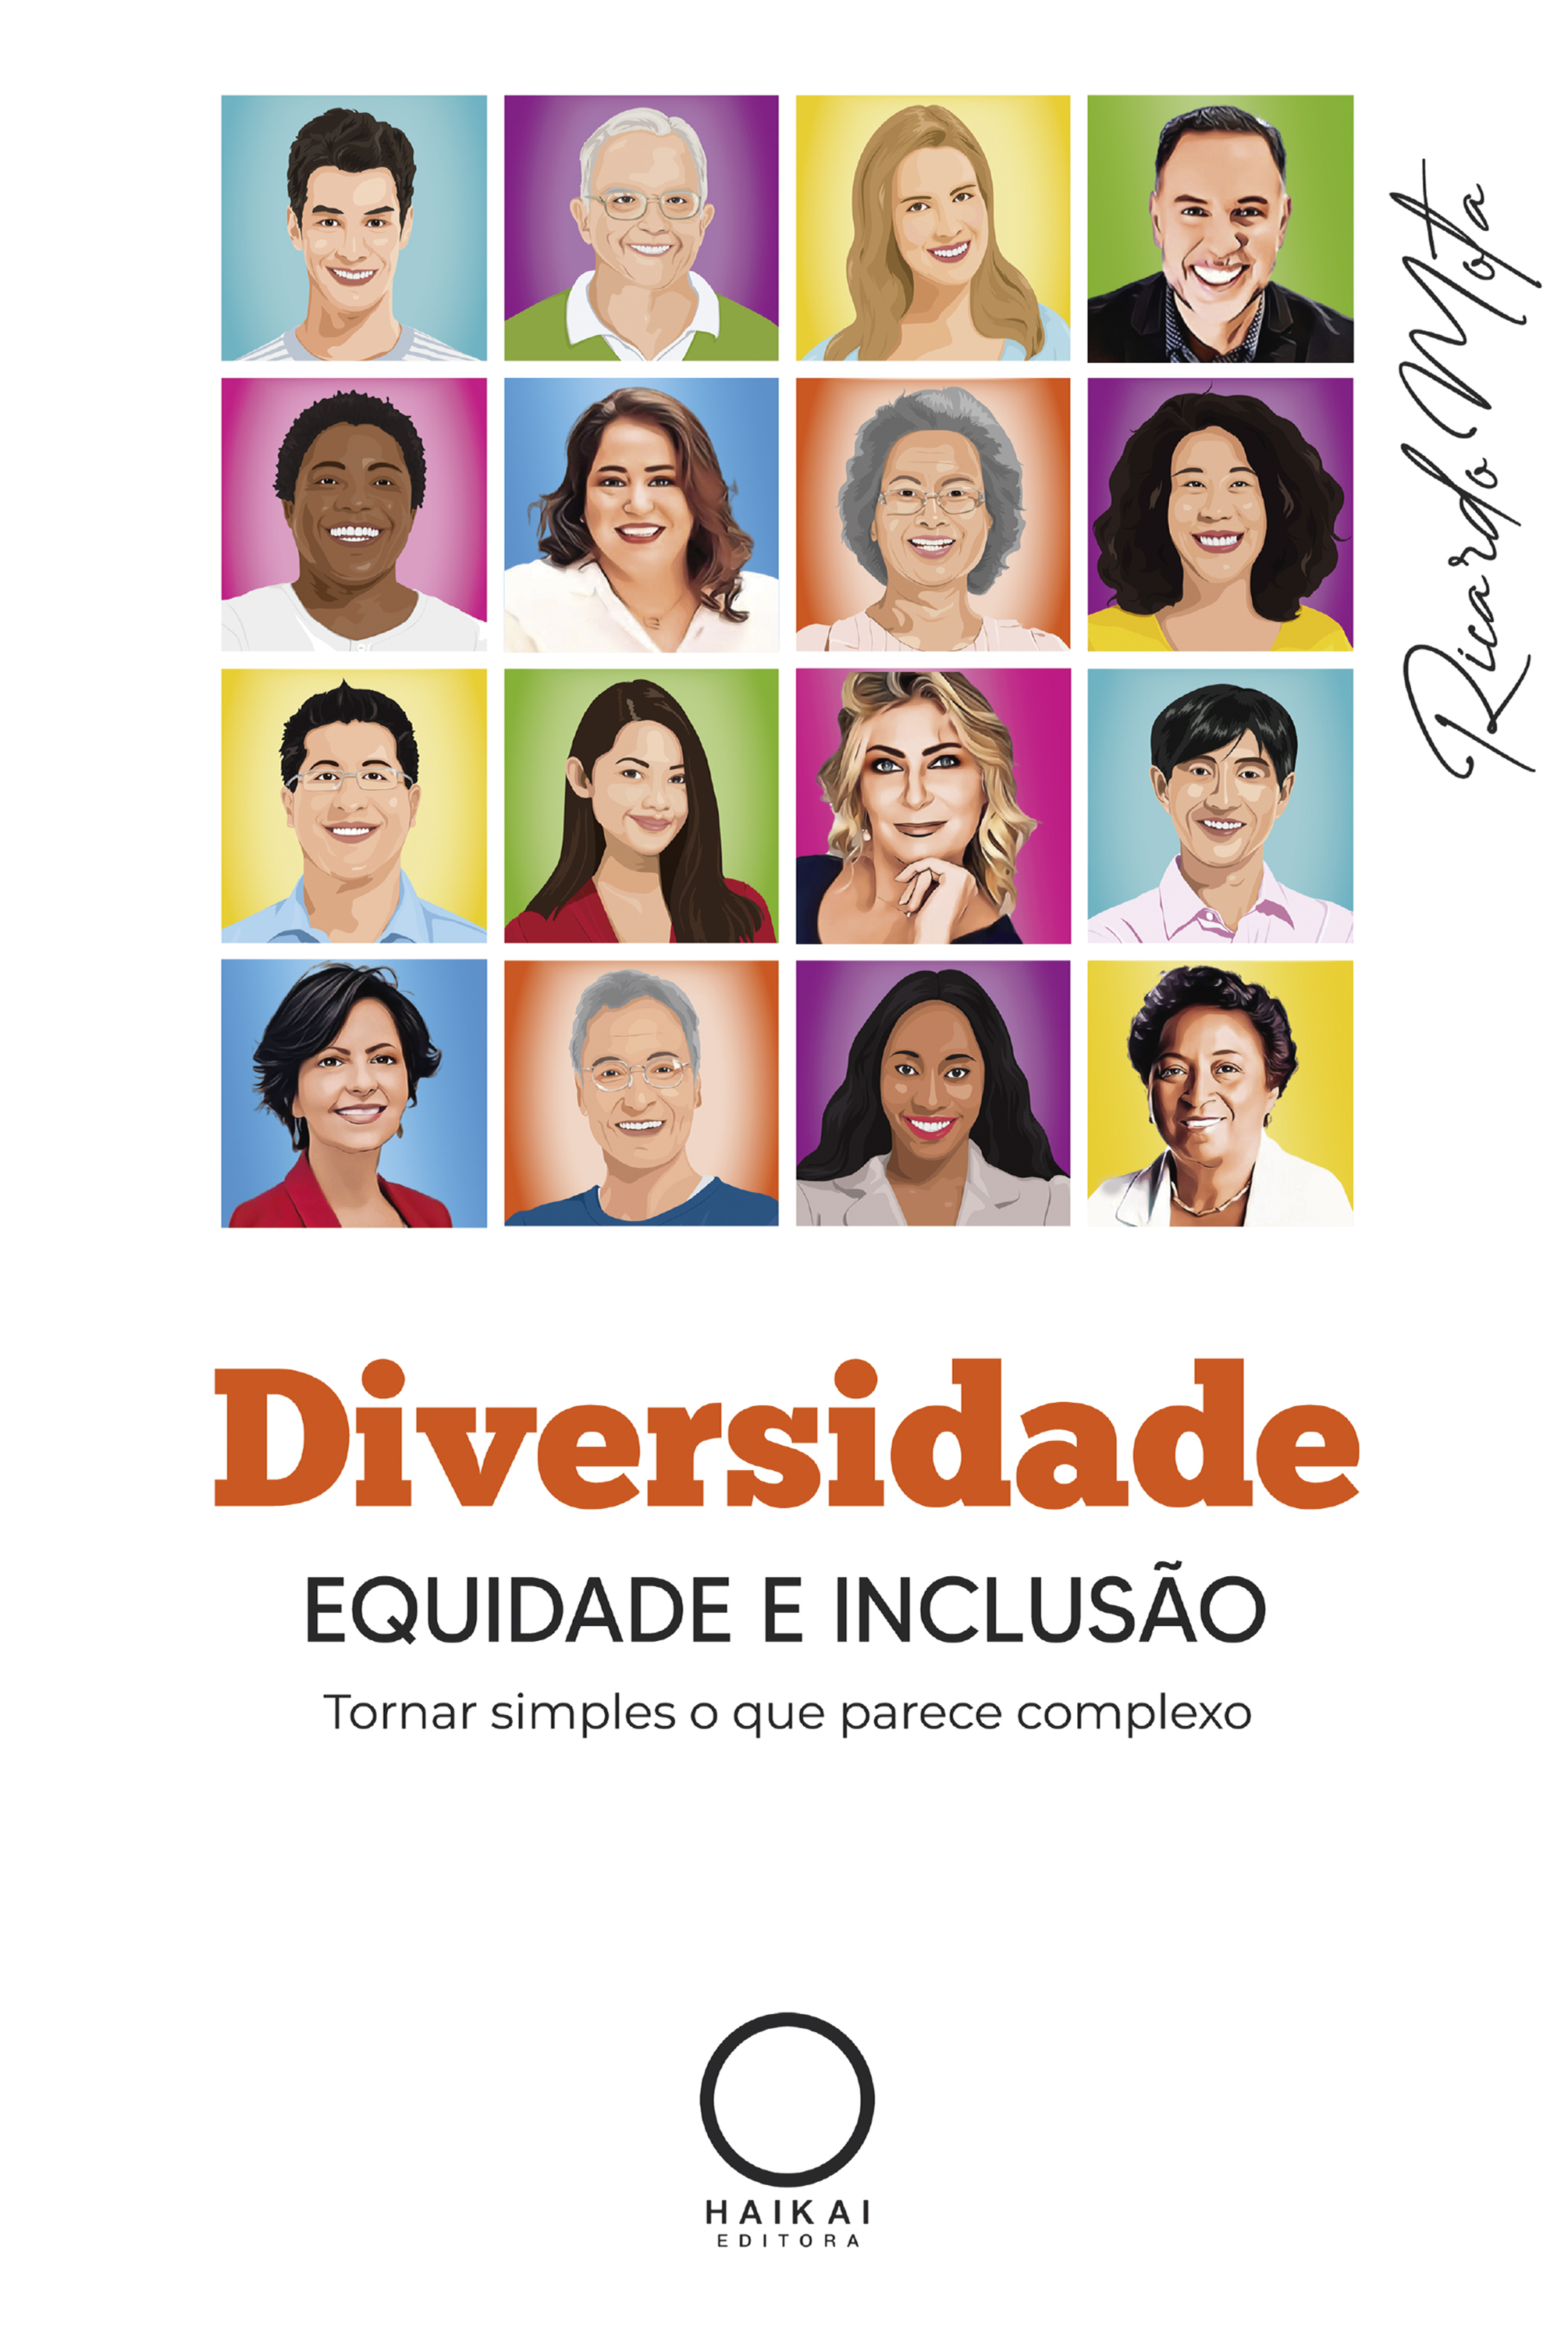 Diversidade, Equidade e Inclusão